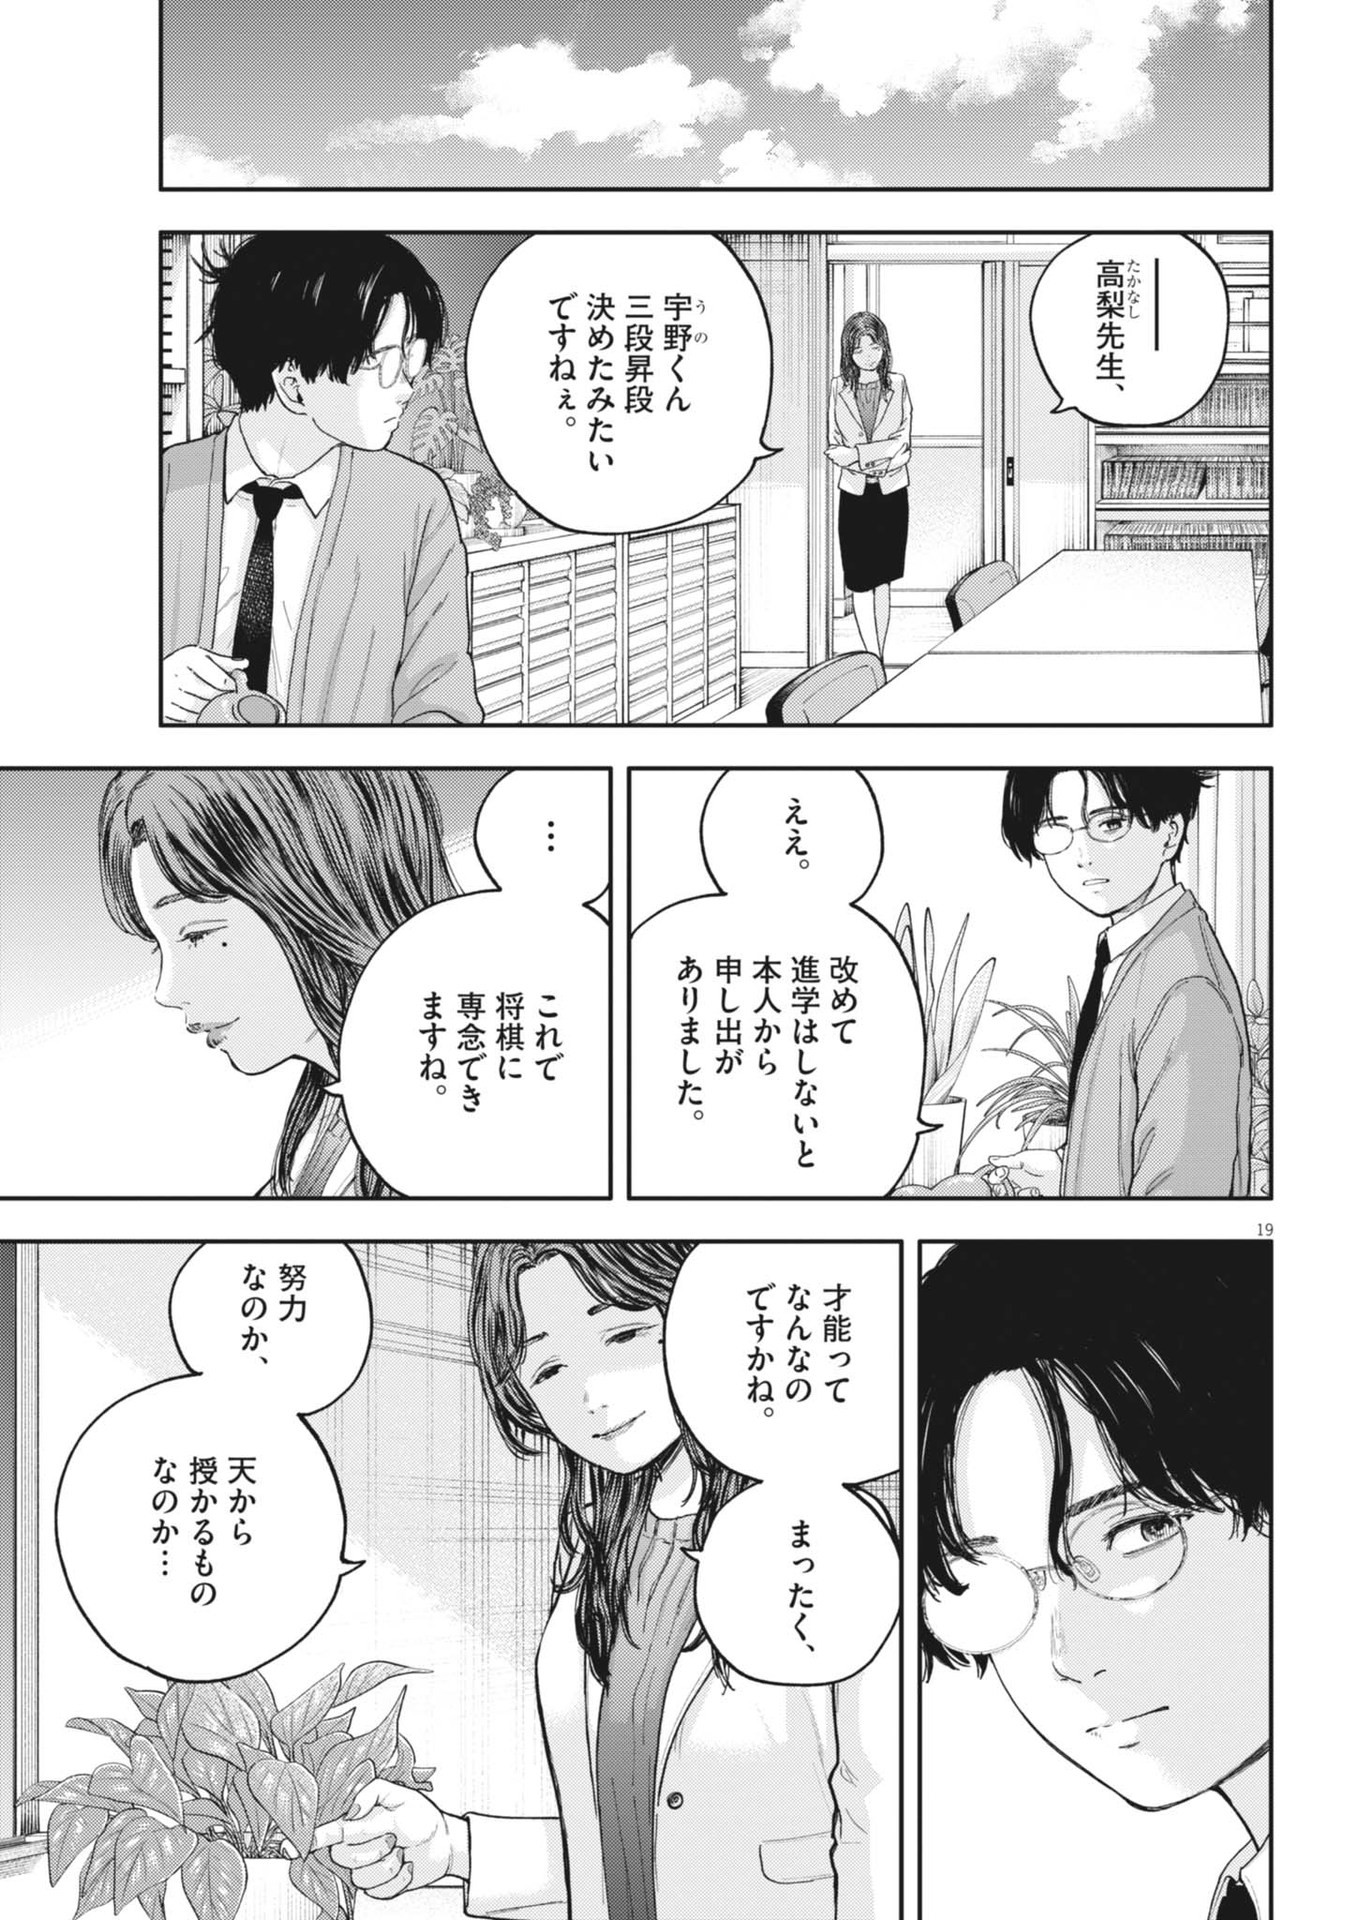 Yumenashi-sensei no Shinroshidou - Chapter 27 - Page 19